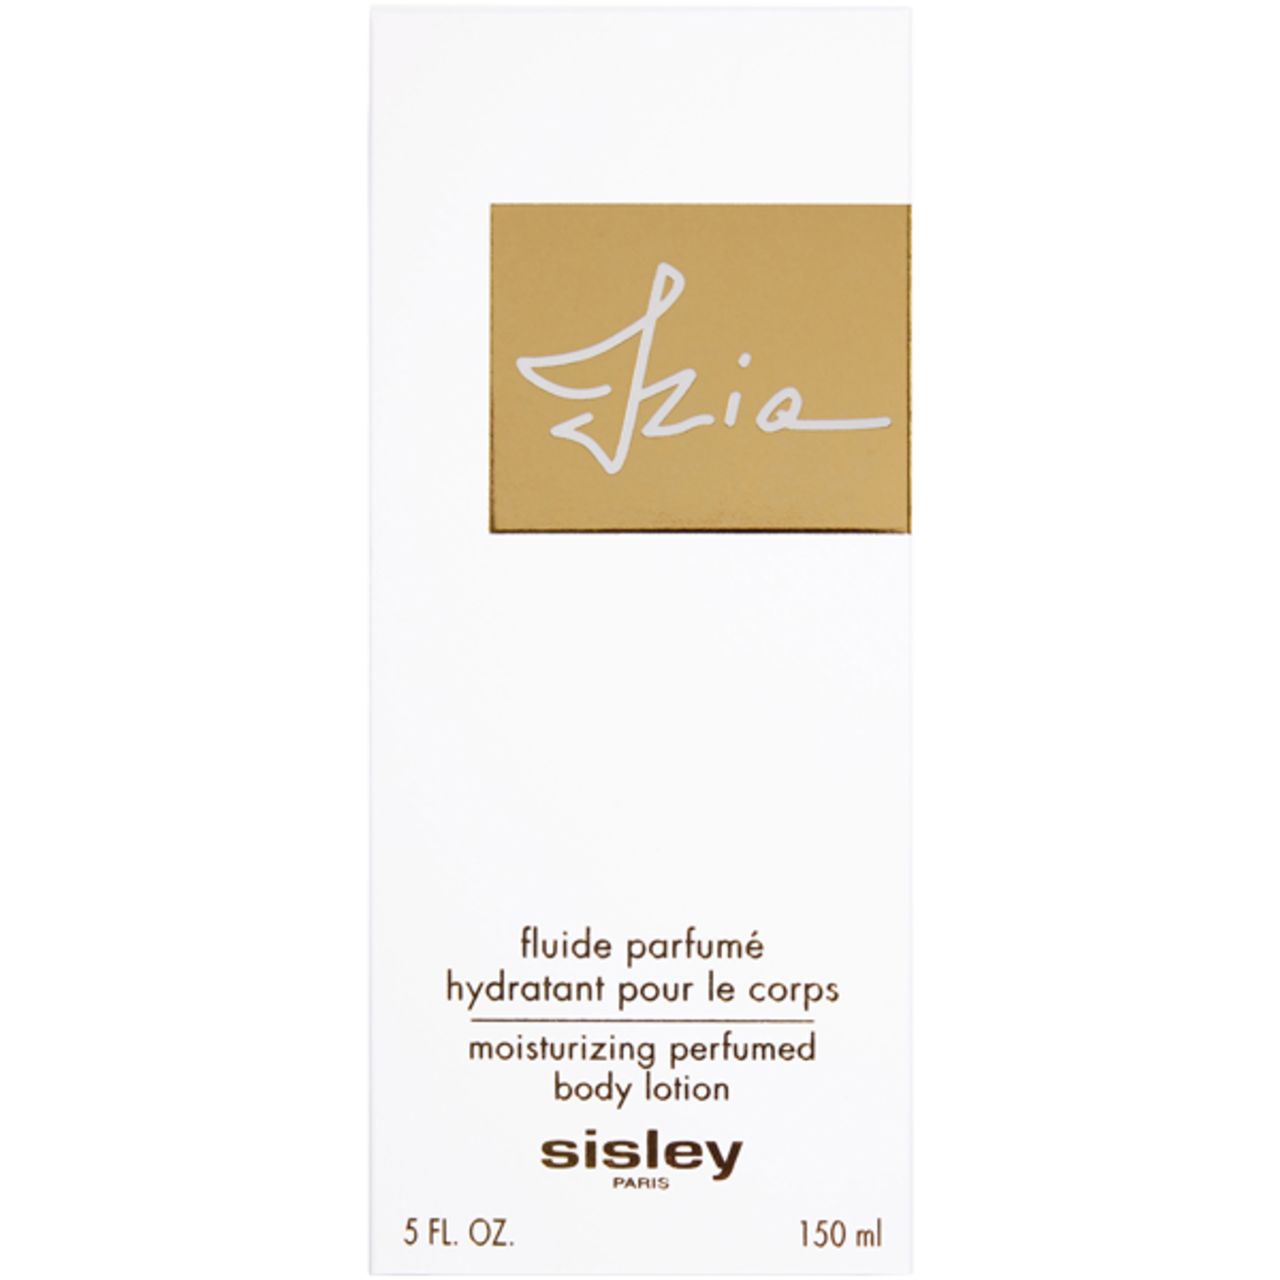 Sisley, Izia Fluide Parfumé Hydratant pour le Corps